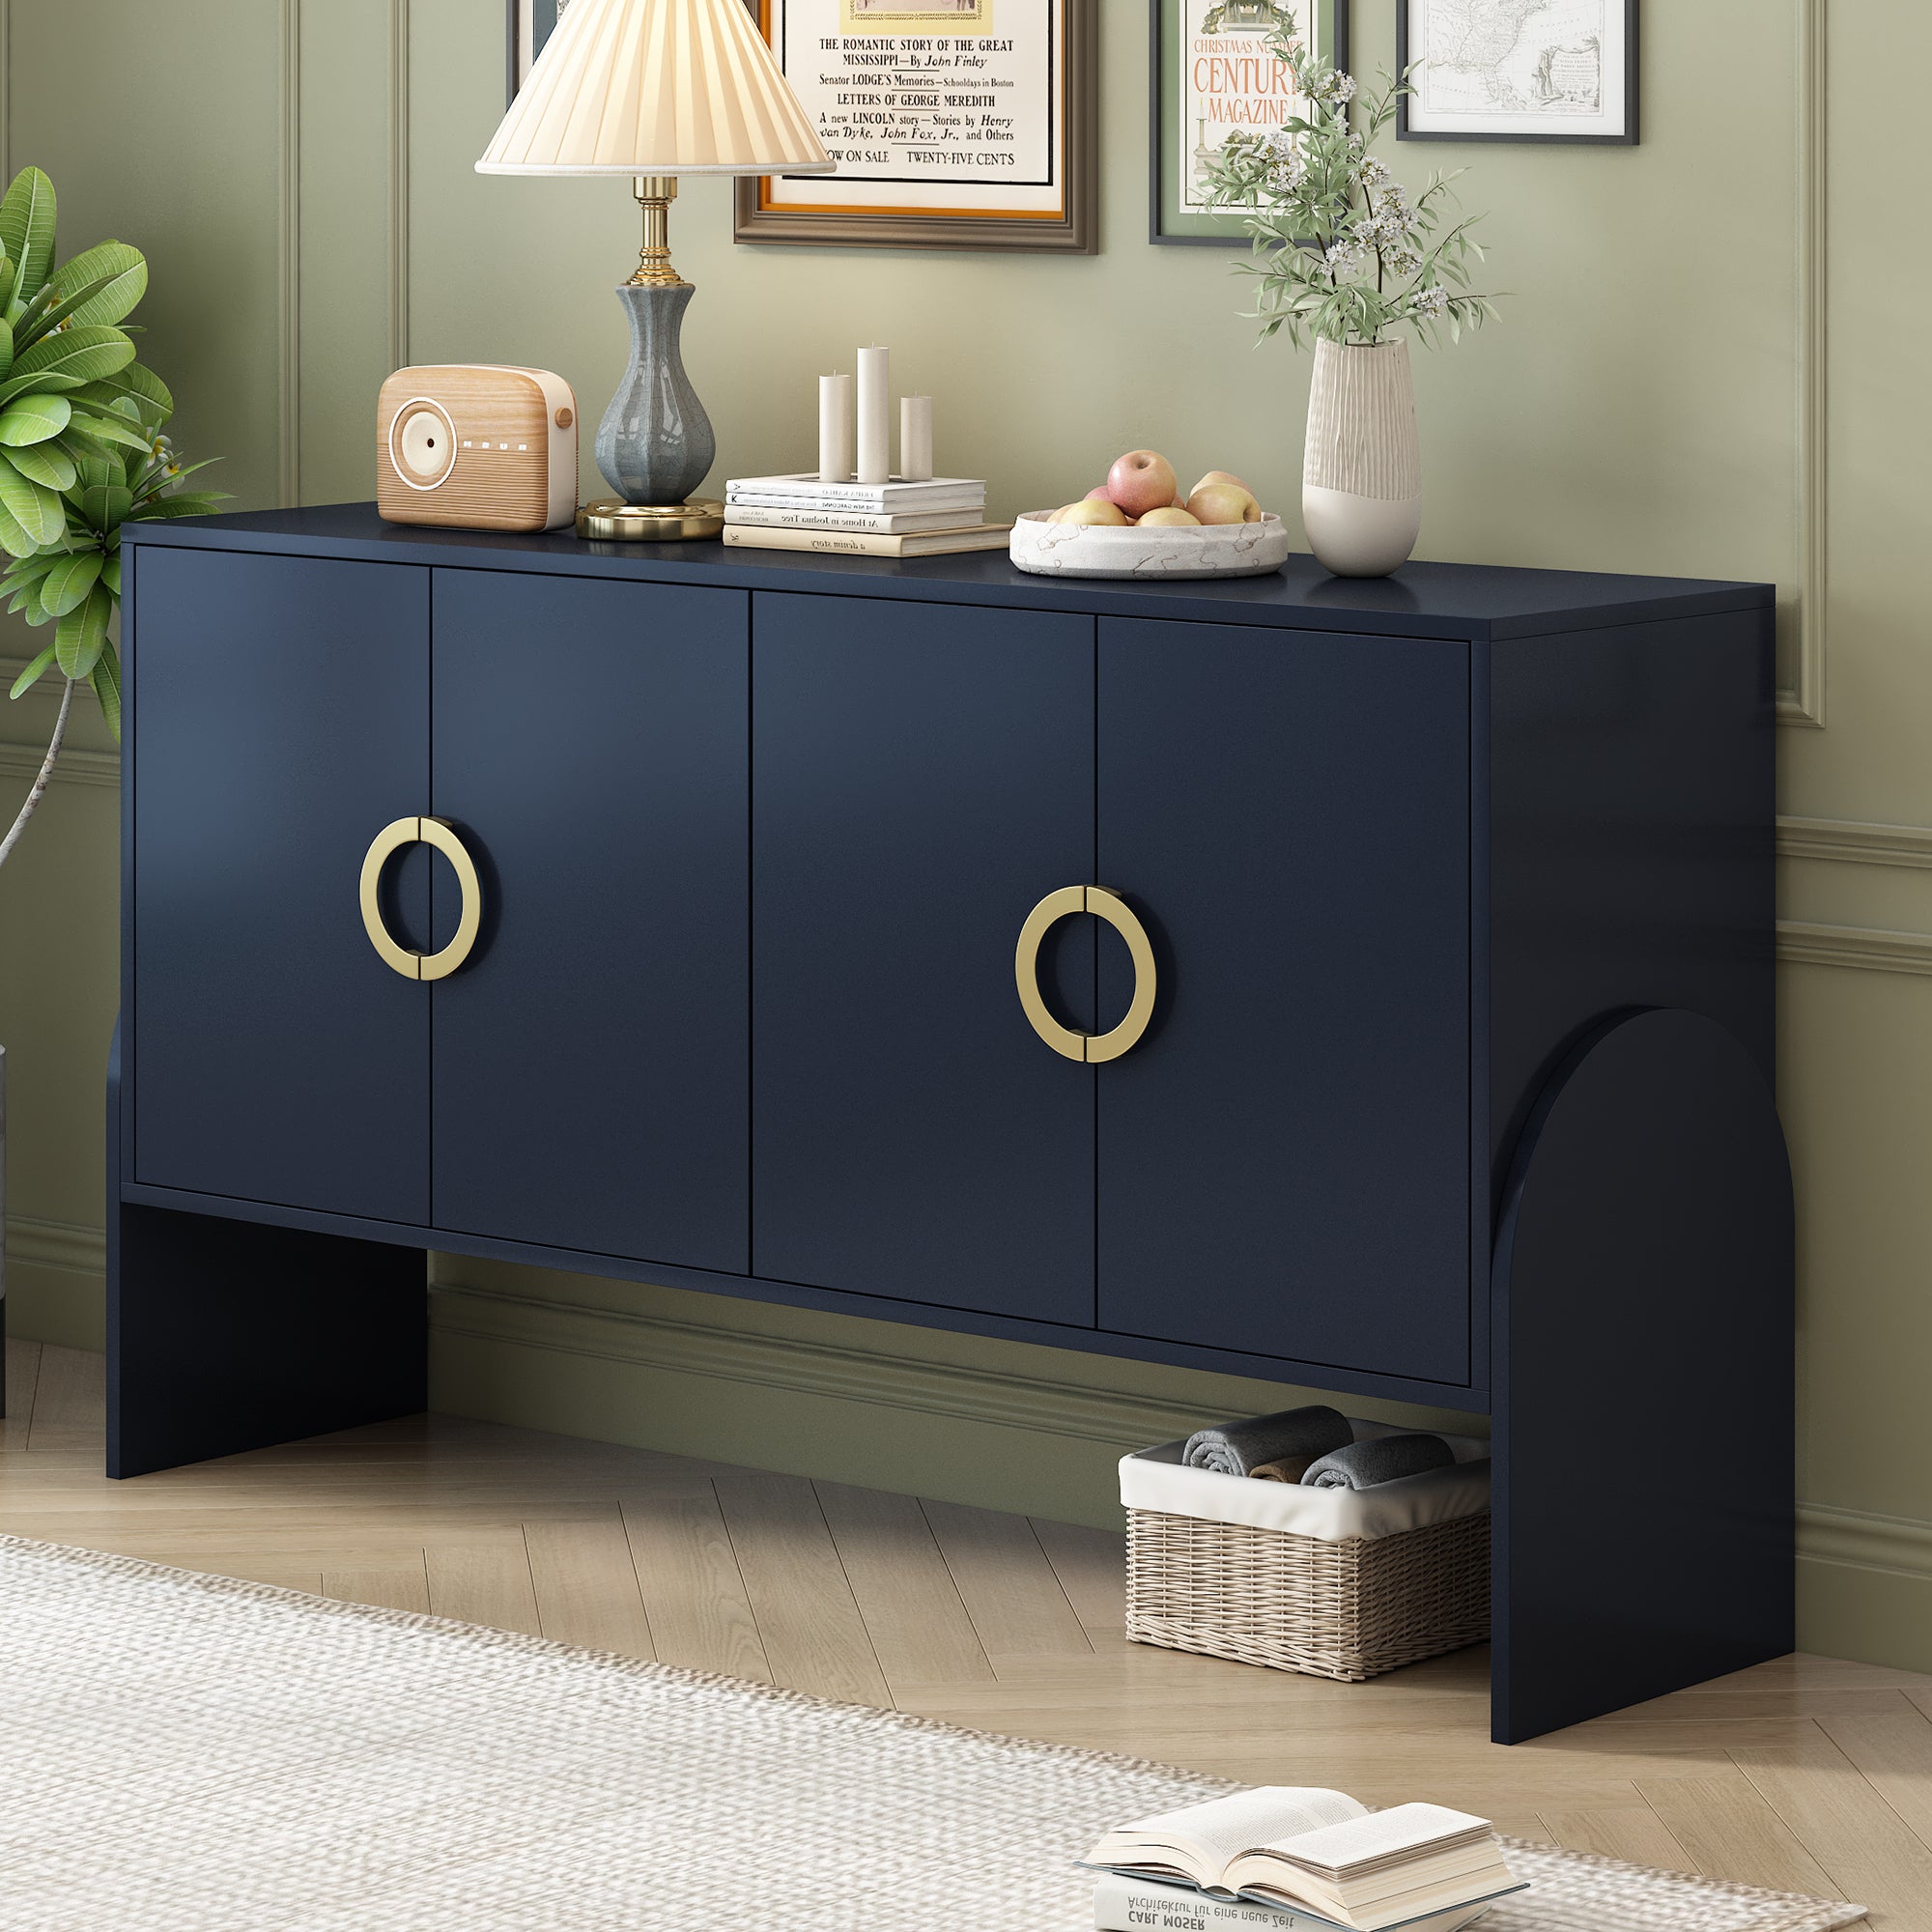 🆓🚛 4-Door Storage Cabinet, Metal Handle, Suitable for Study, Living Room, Bedroom, Navy Blue